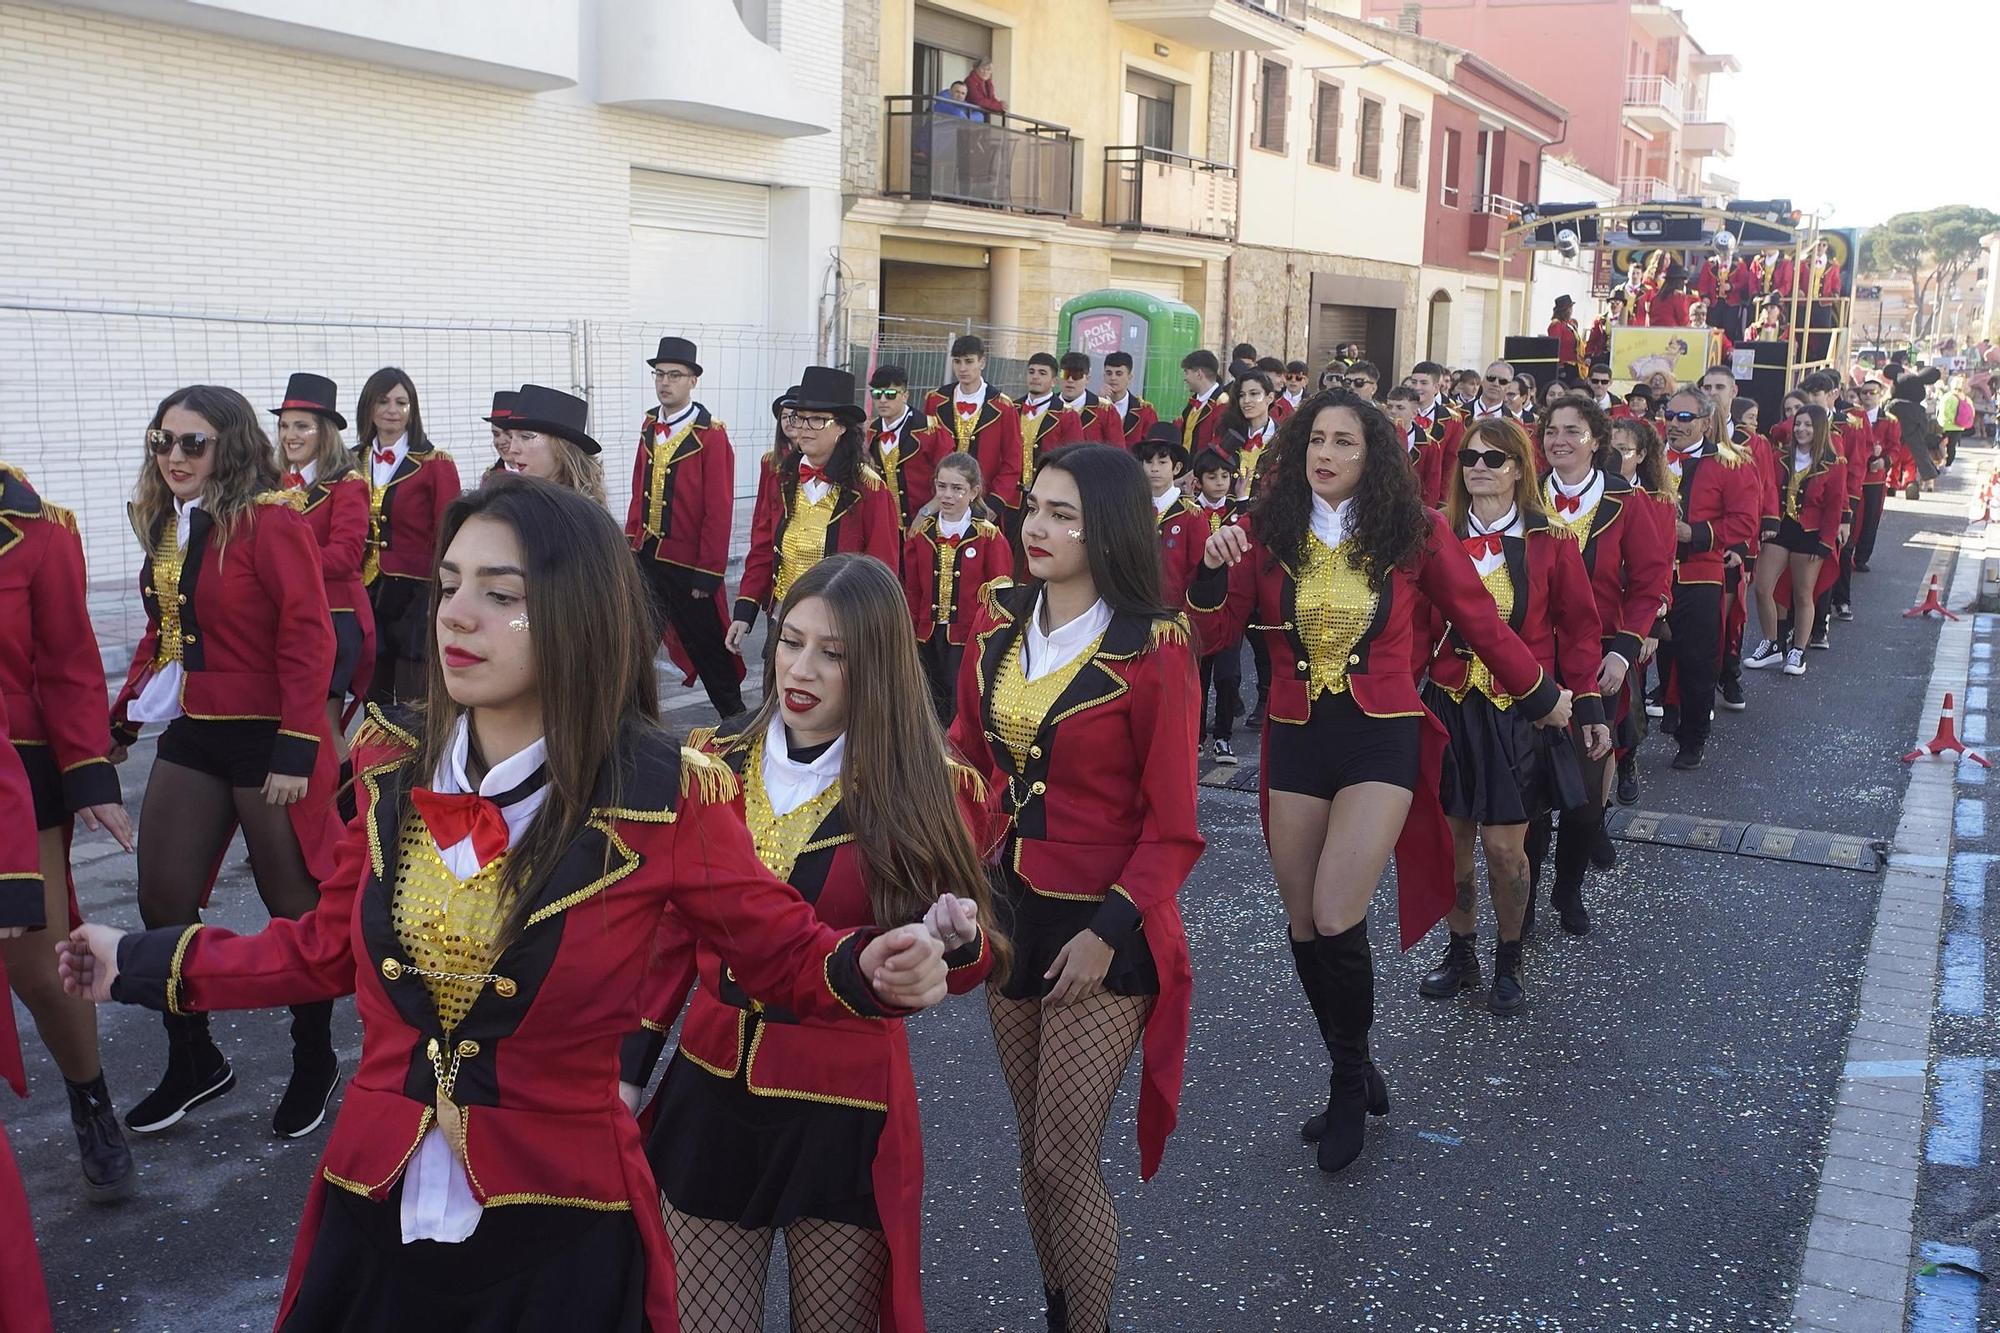 Busca't a les imatges del Carnaval de Sant Antoni de Calonge